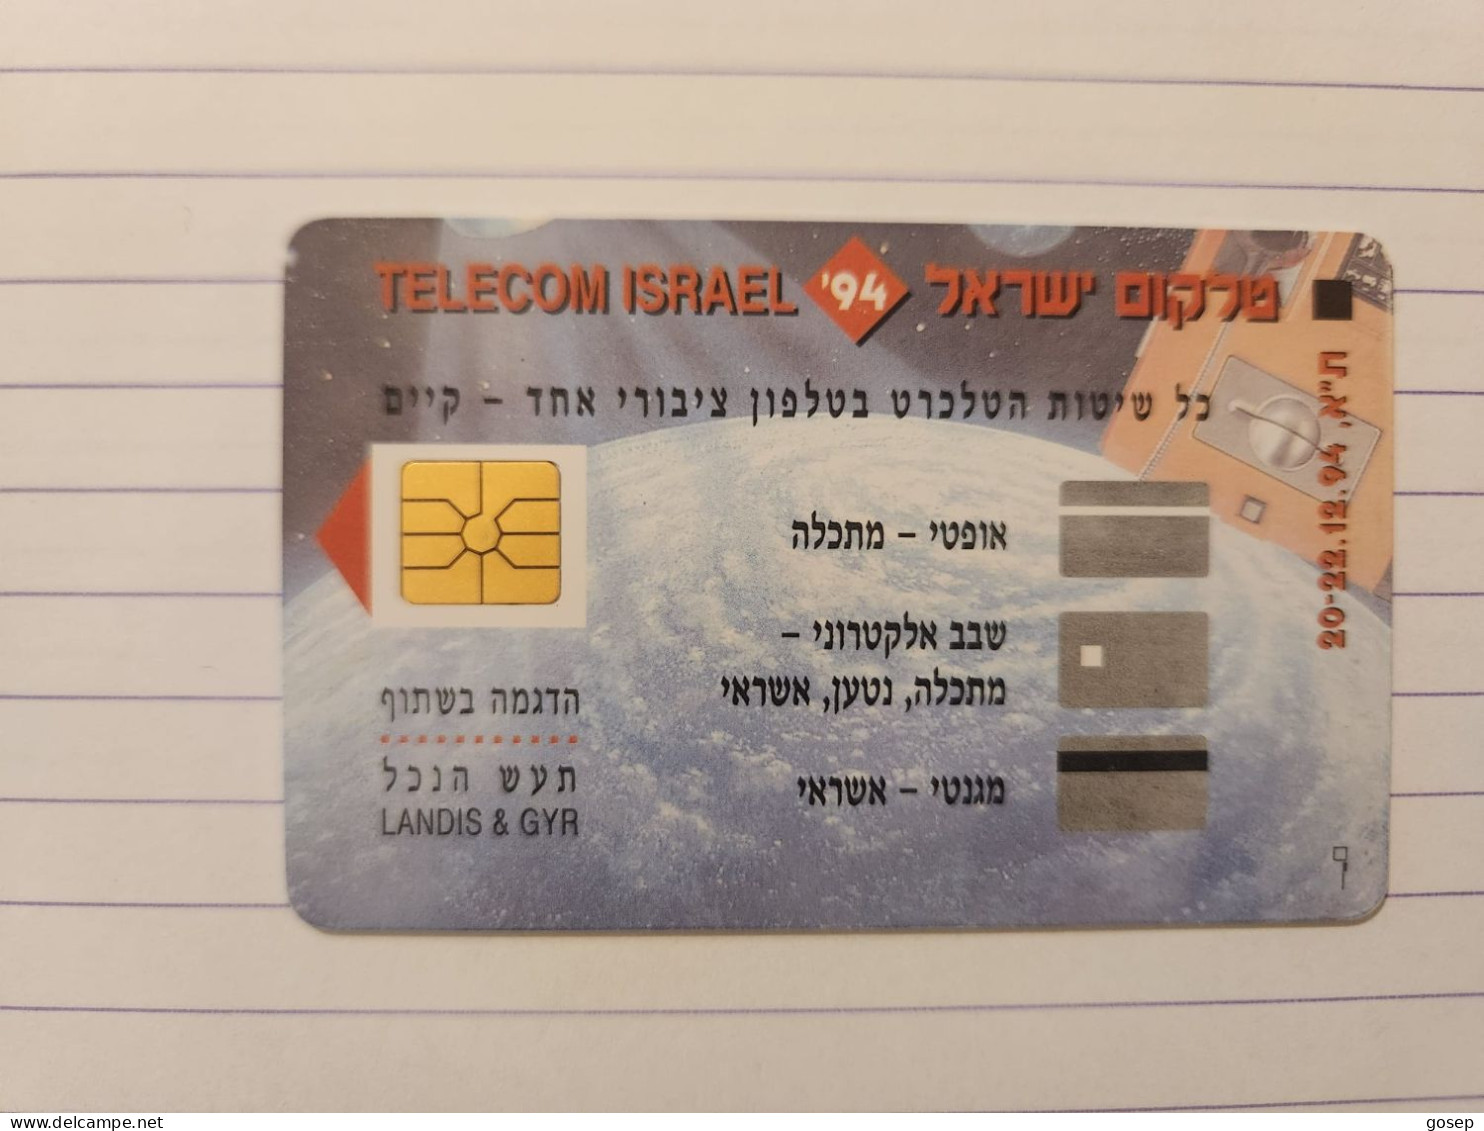 (Bzc-1)-(bzc-1)(tr)-(gemplus-1)-telecom Israel 94-(tirage-300)-mint Card+(lokking From Information)-50 Prepiad Card Free - Israel